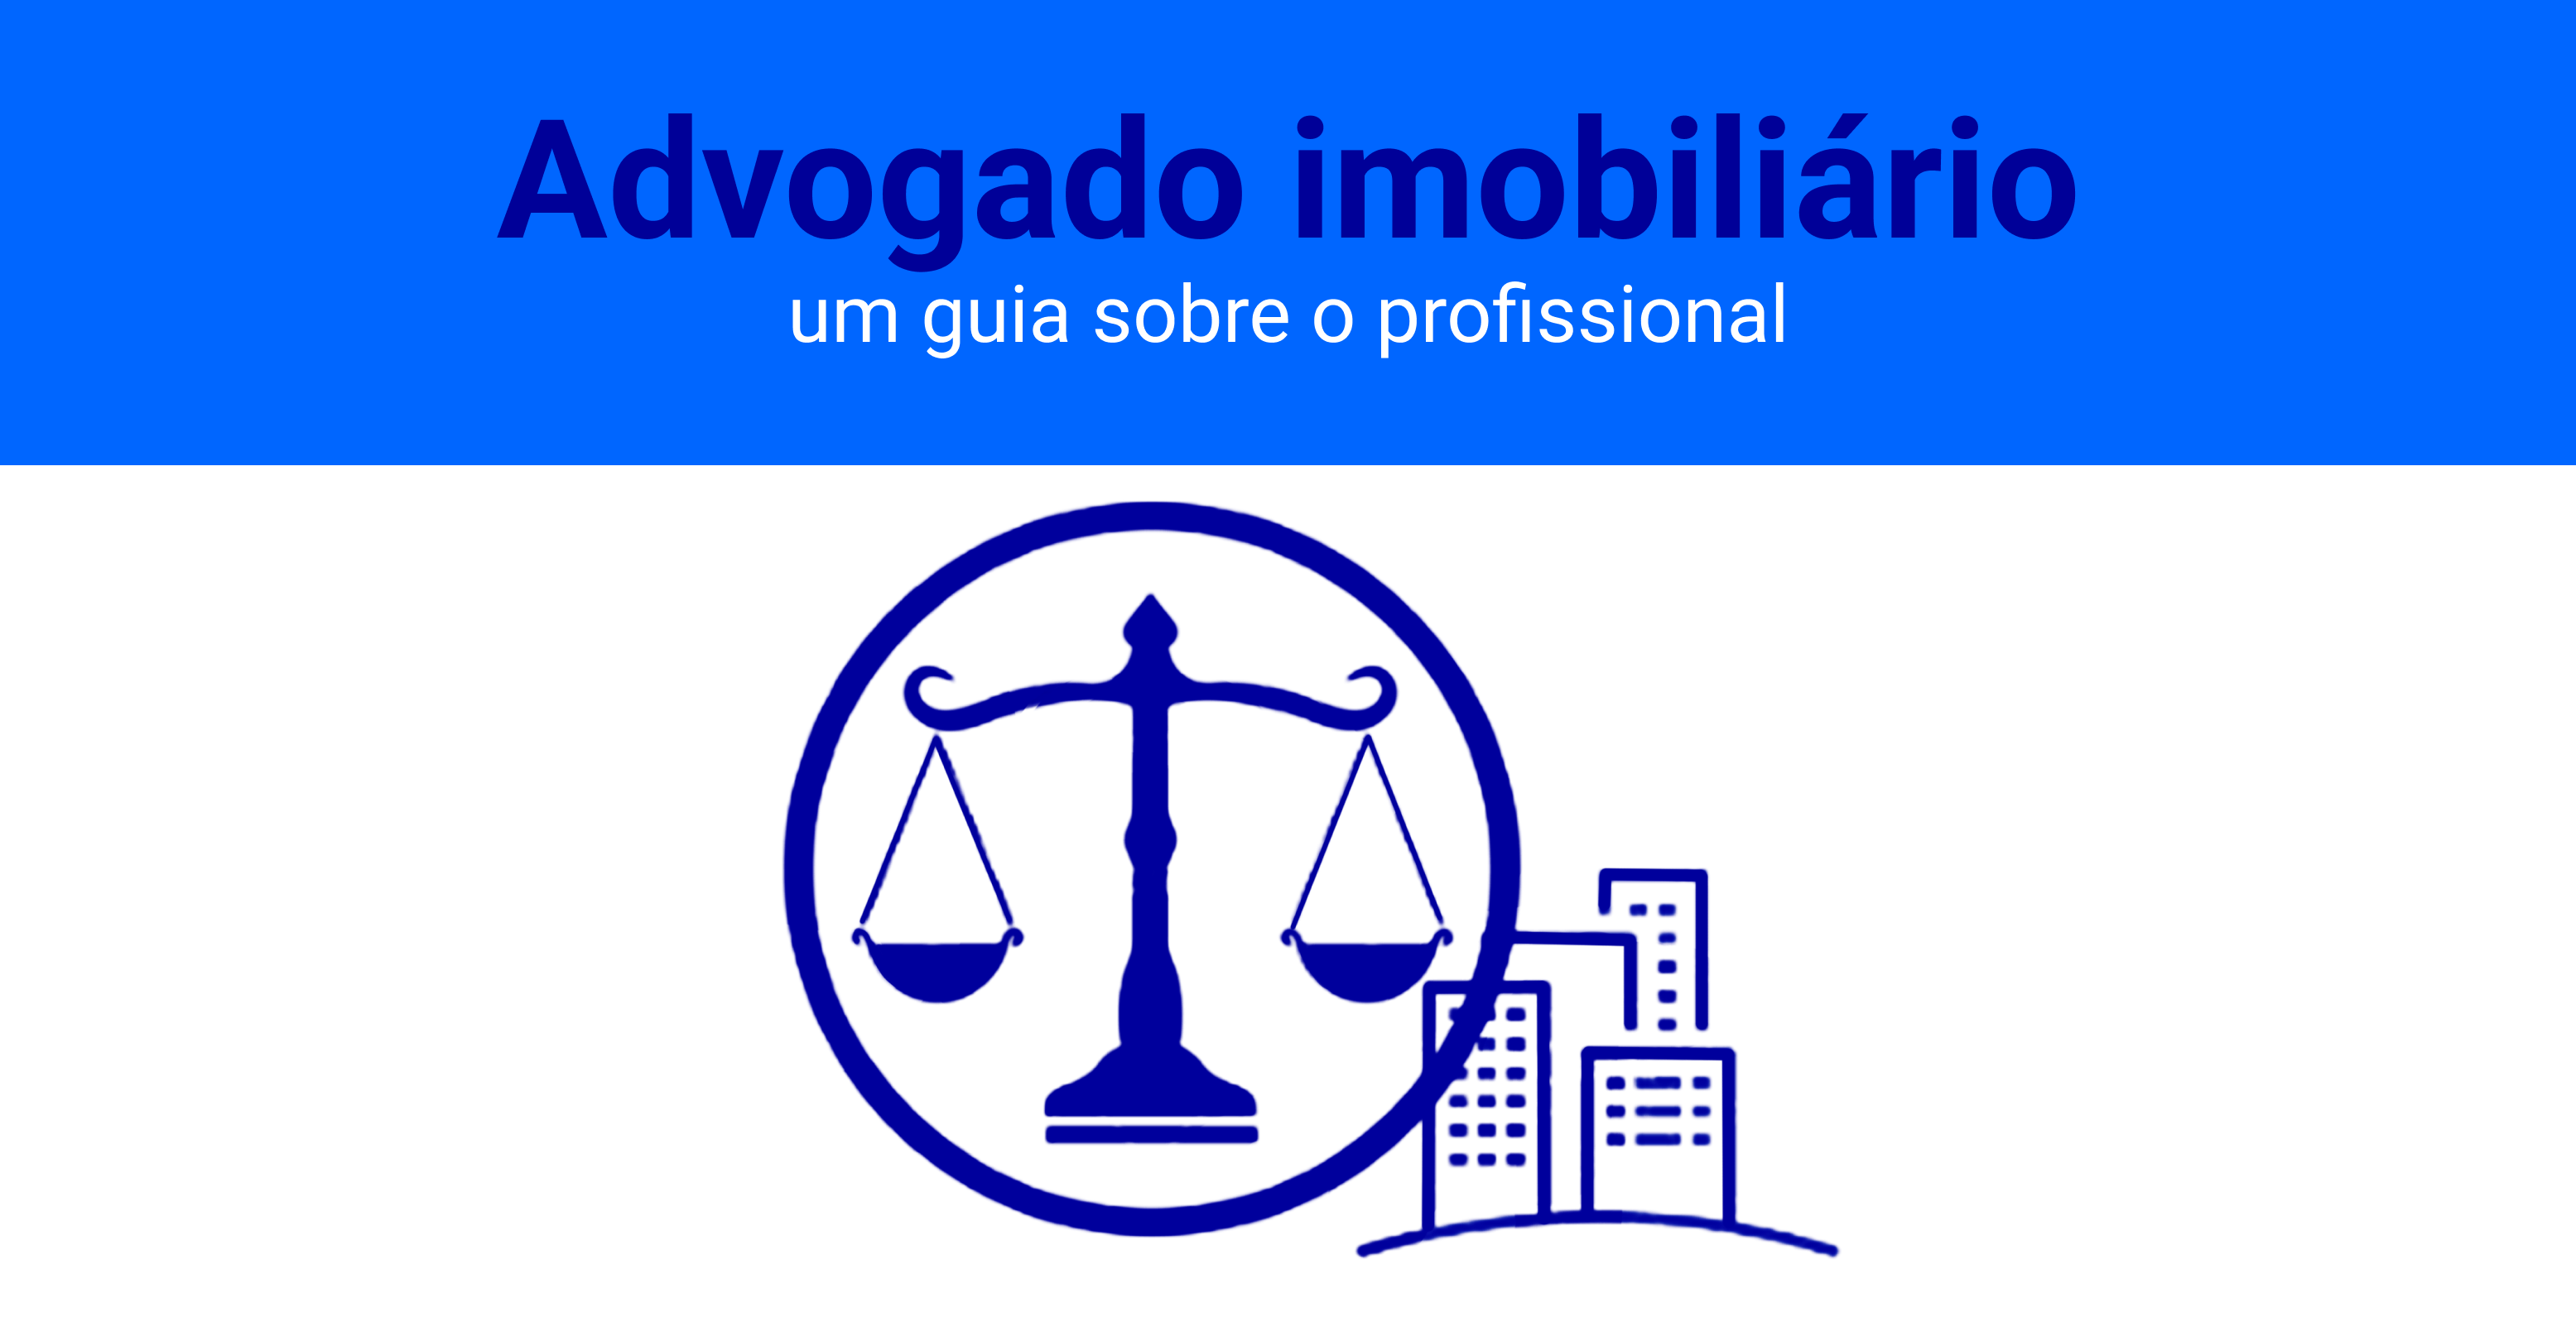 O advogado imobiliário tem uma relação íntima com os direitos reais — referentes às normas brasileiras que regulam todas as relações jurídicas de bens materiais e imateriais.